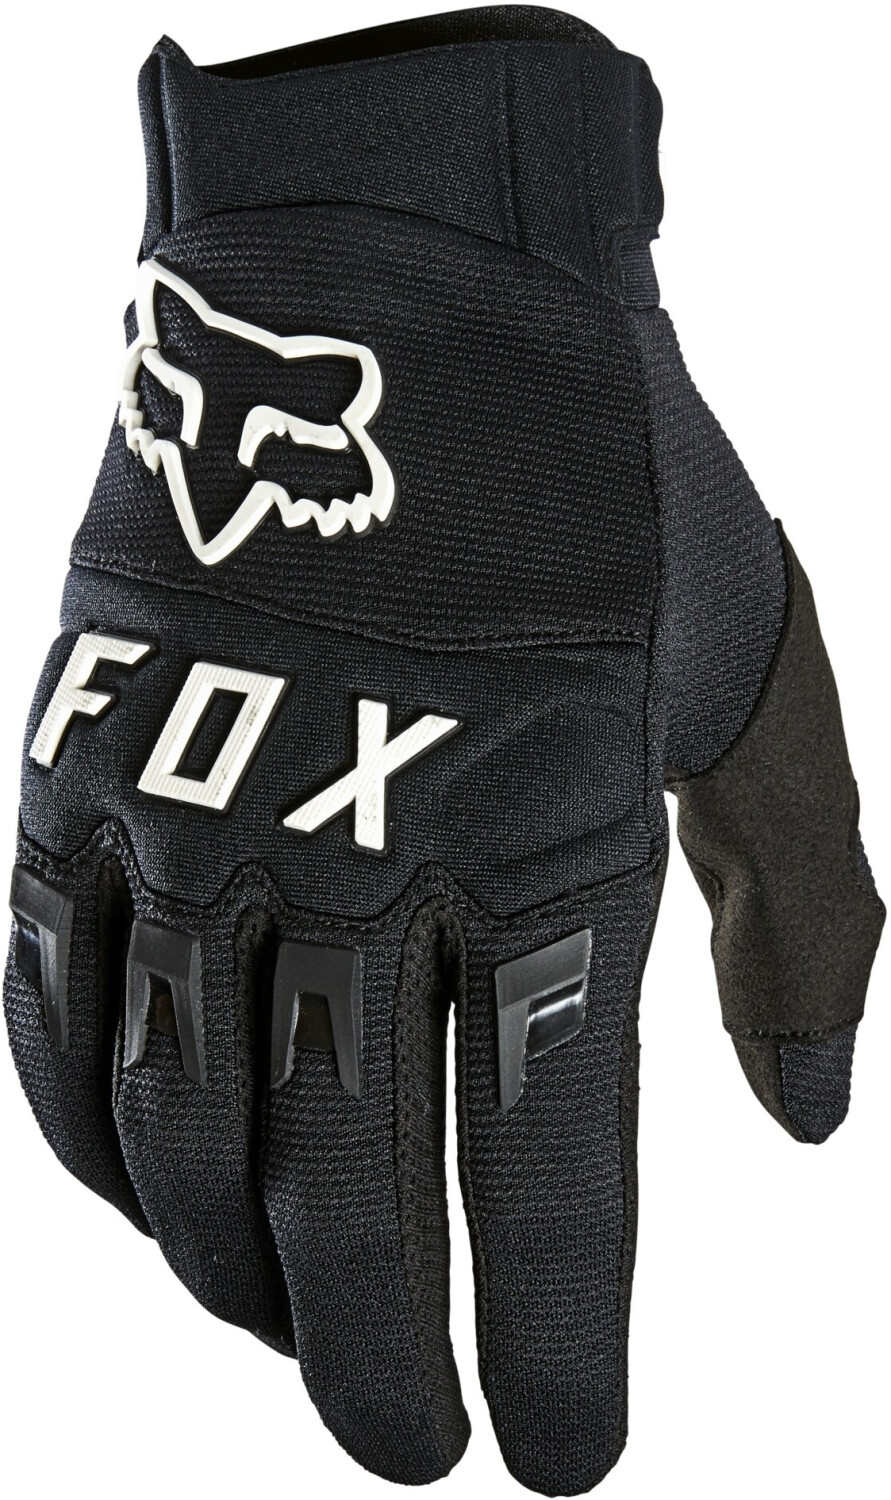 Photos - Cycling Gloves Fox Dirtpaw Glove Black/White 